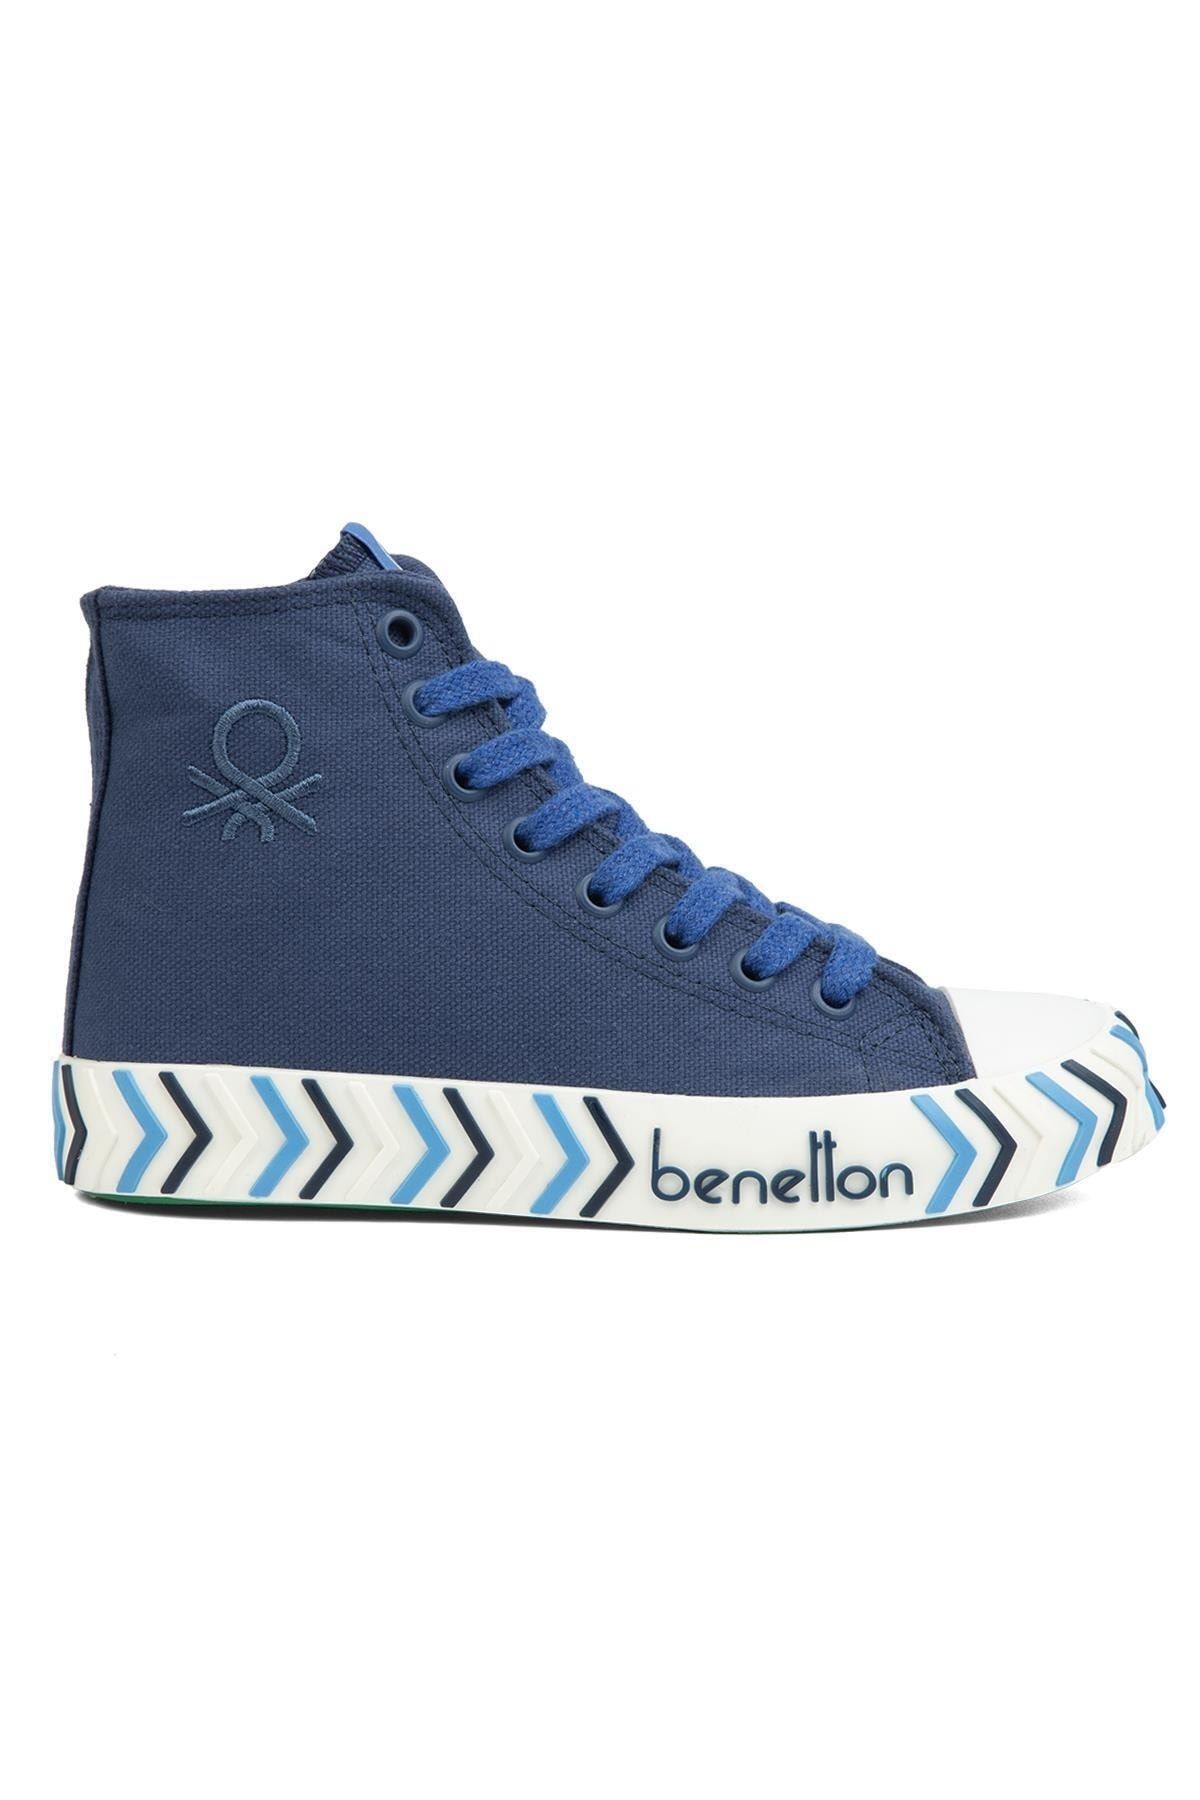 Benetton ® | BN-90625-Lacivert - Kadın Spor Ayakkabı